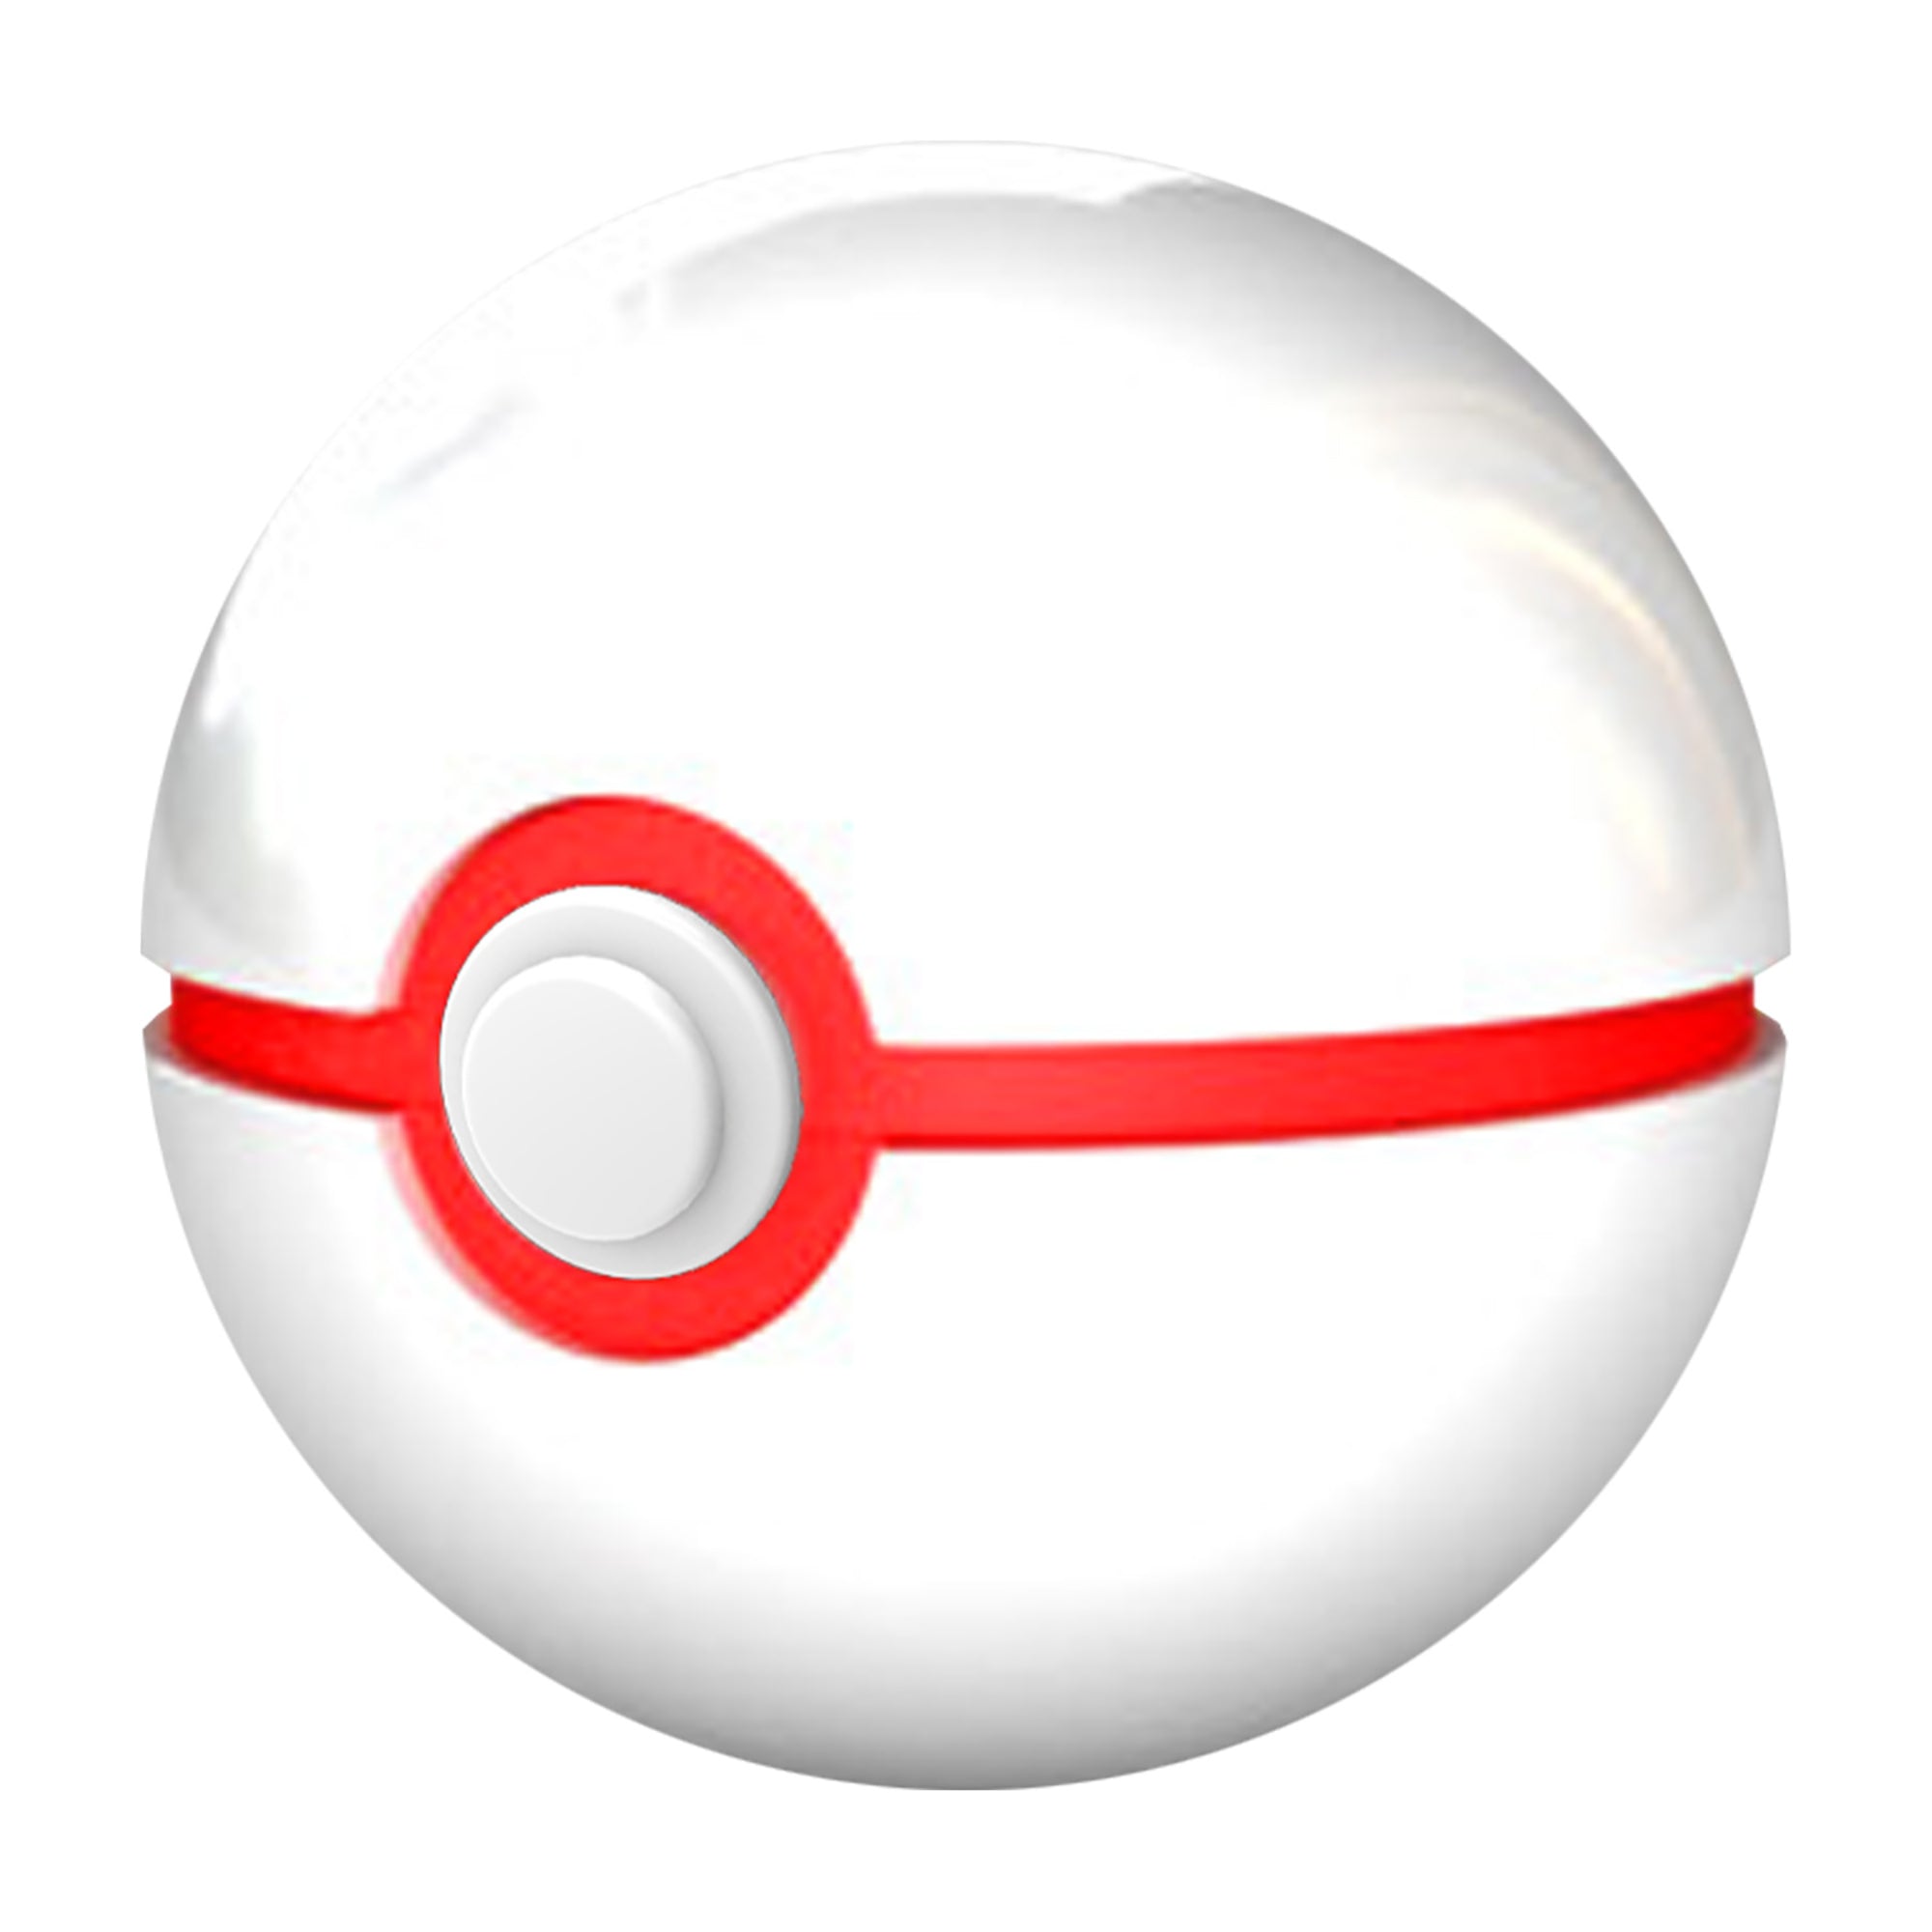 Pokémon Dresseur Guess Édition Sinnoh - Version Française 6+